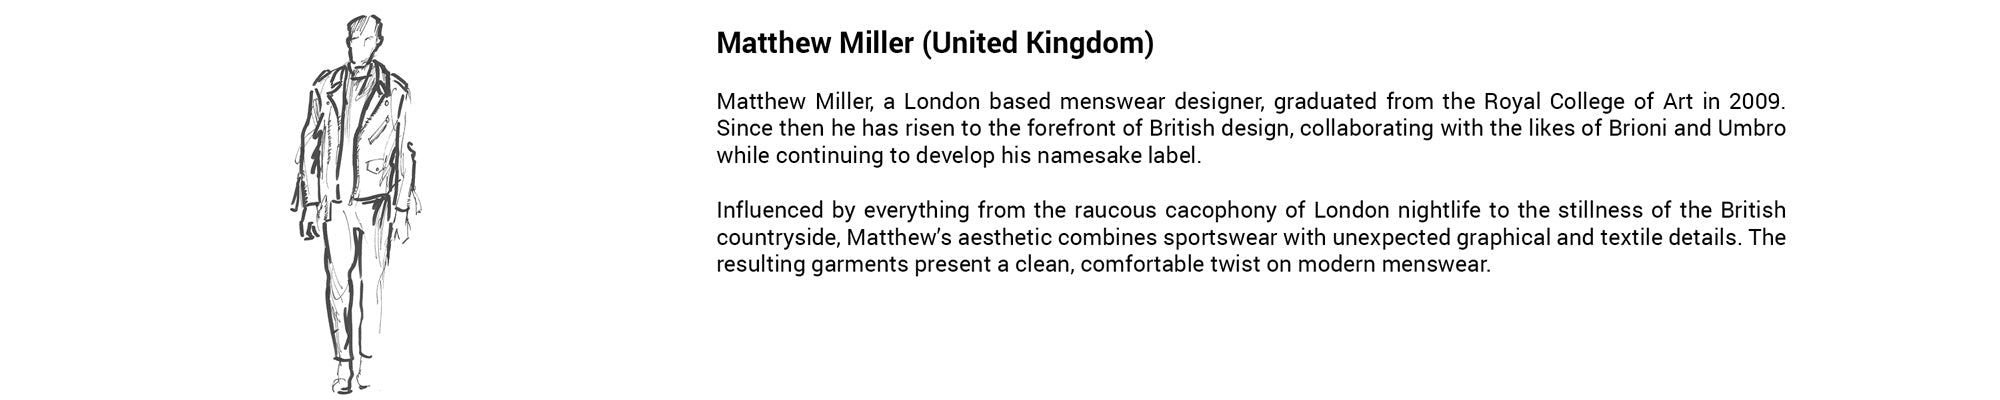 Matthew Miller Banner